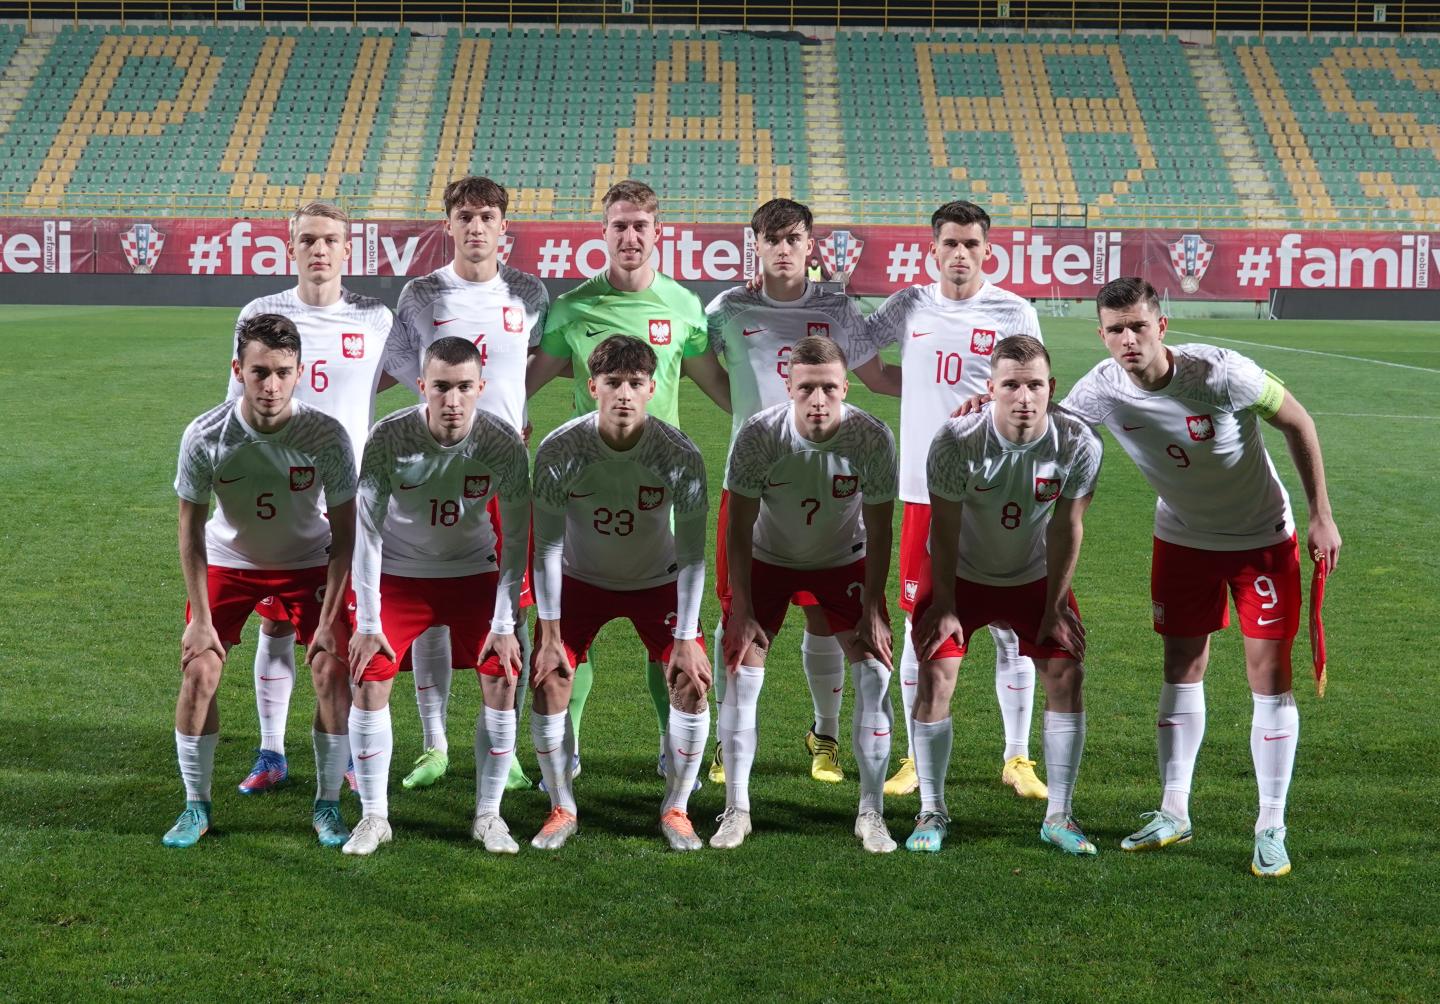 Chorwacja - Polska 3:1 U21 (17.11.2022), zdjęcie drużynowe Polaków.